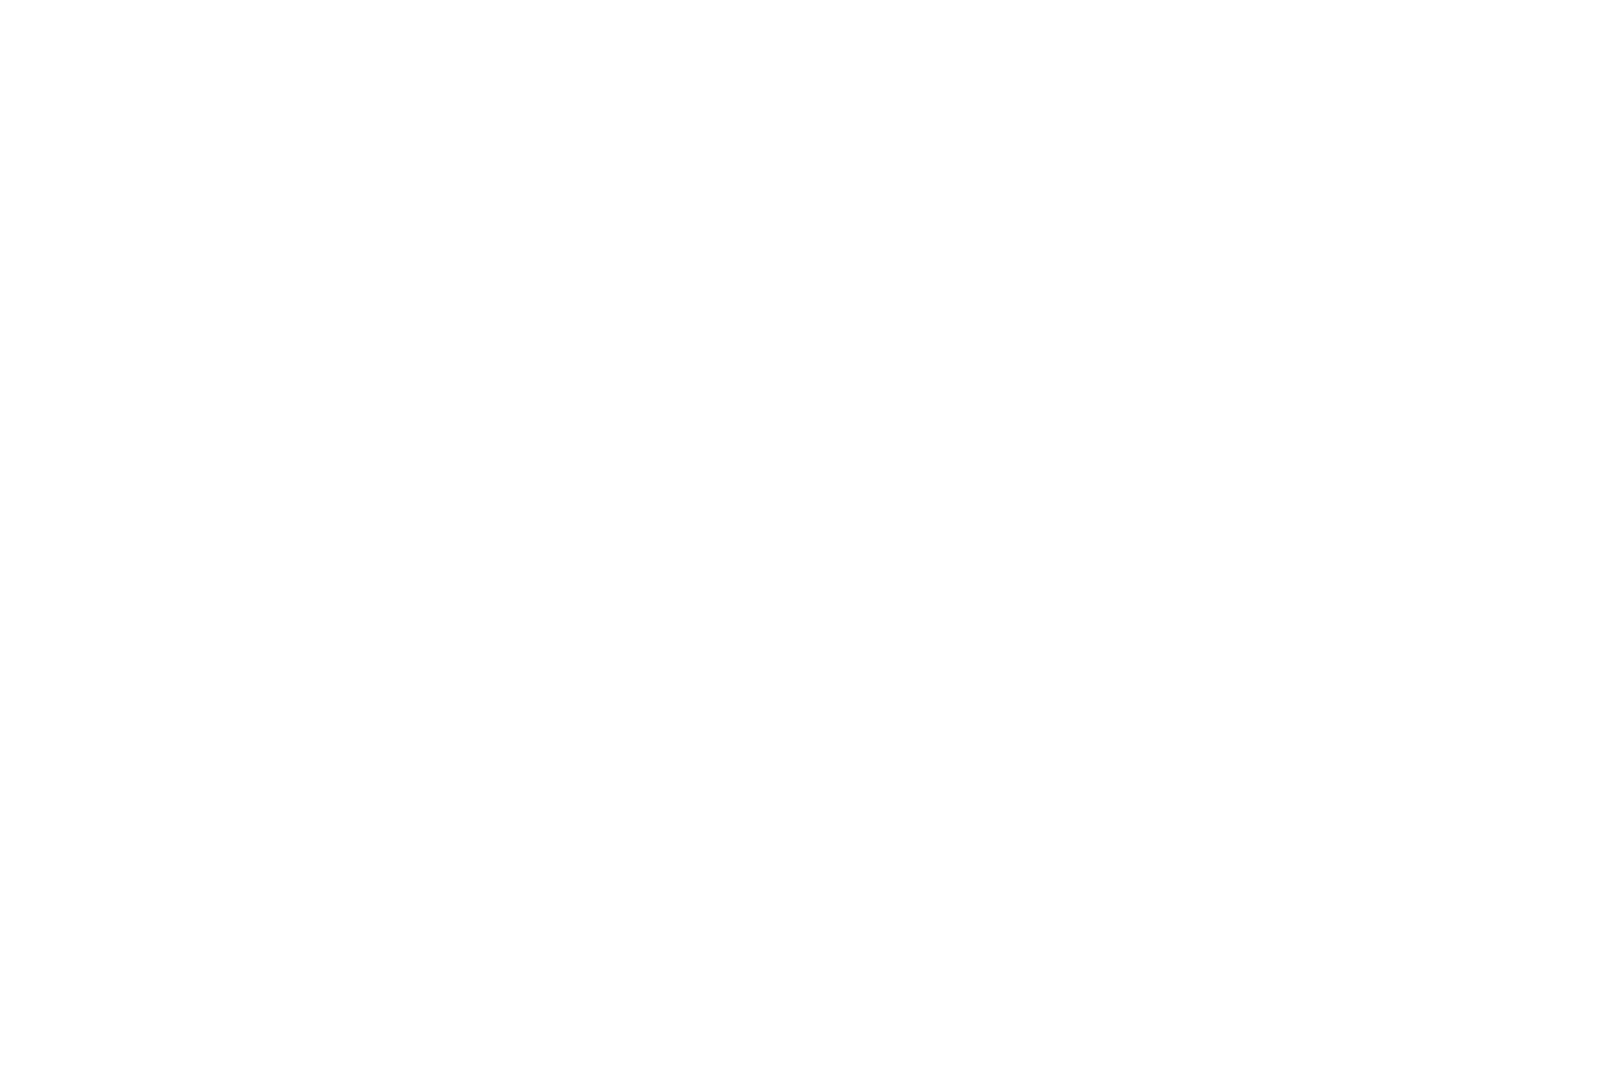 Стадо северных оленей бежитна пастбище с ягелем и парит. Ненцы оленеводы-кочевники. Тундра зимой, Ямал и Полярный Урал. Фото — Машкова Елена фотограф